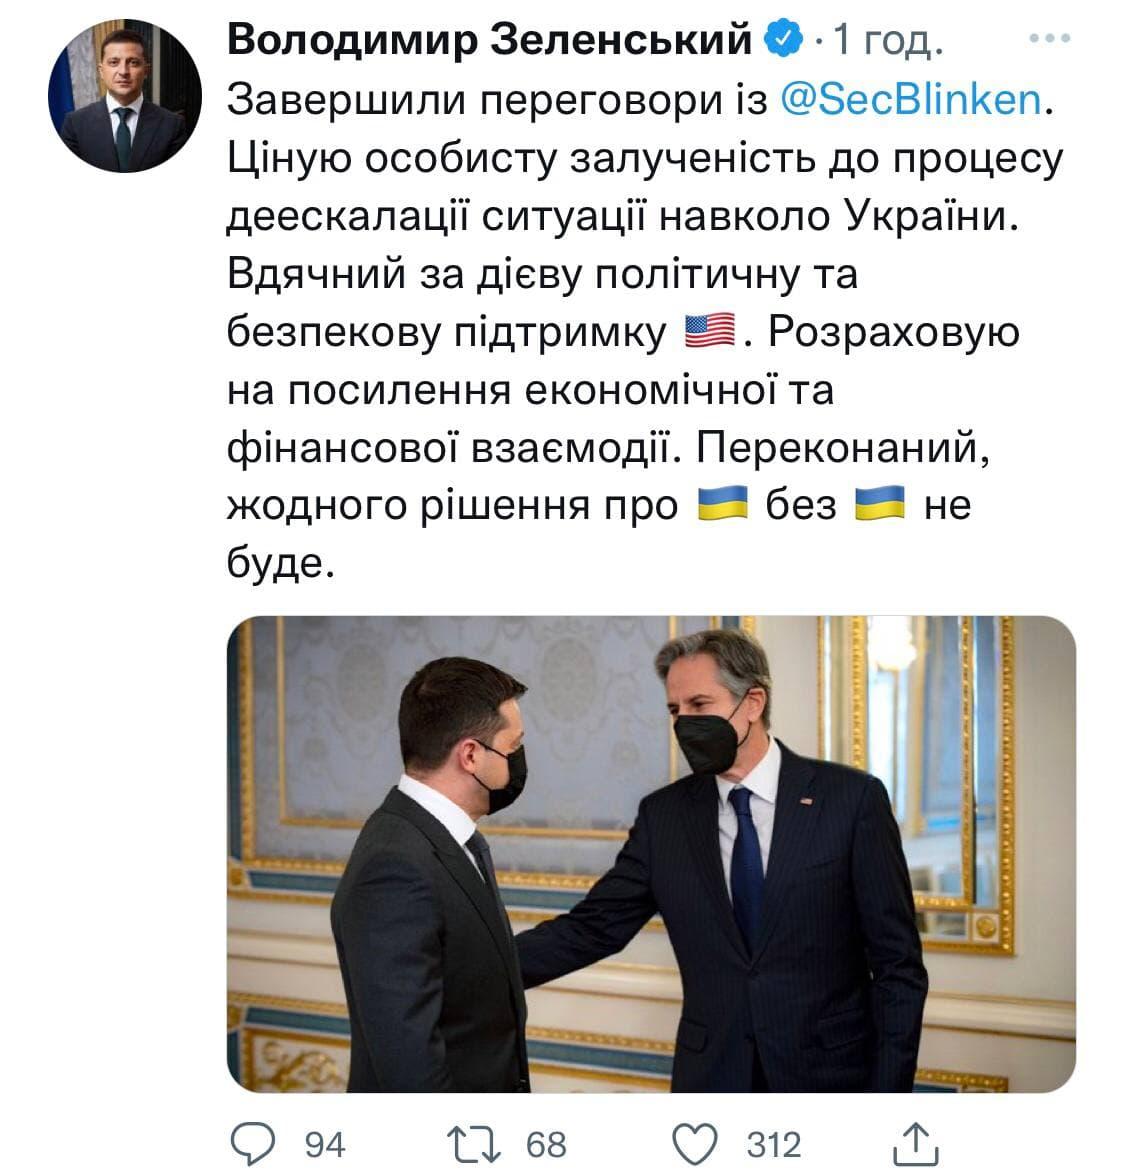 Твит президента / фото Twitter Владимира Зеленского